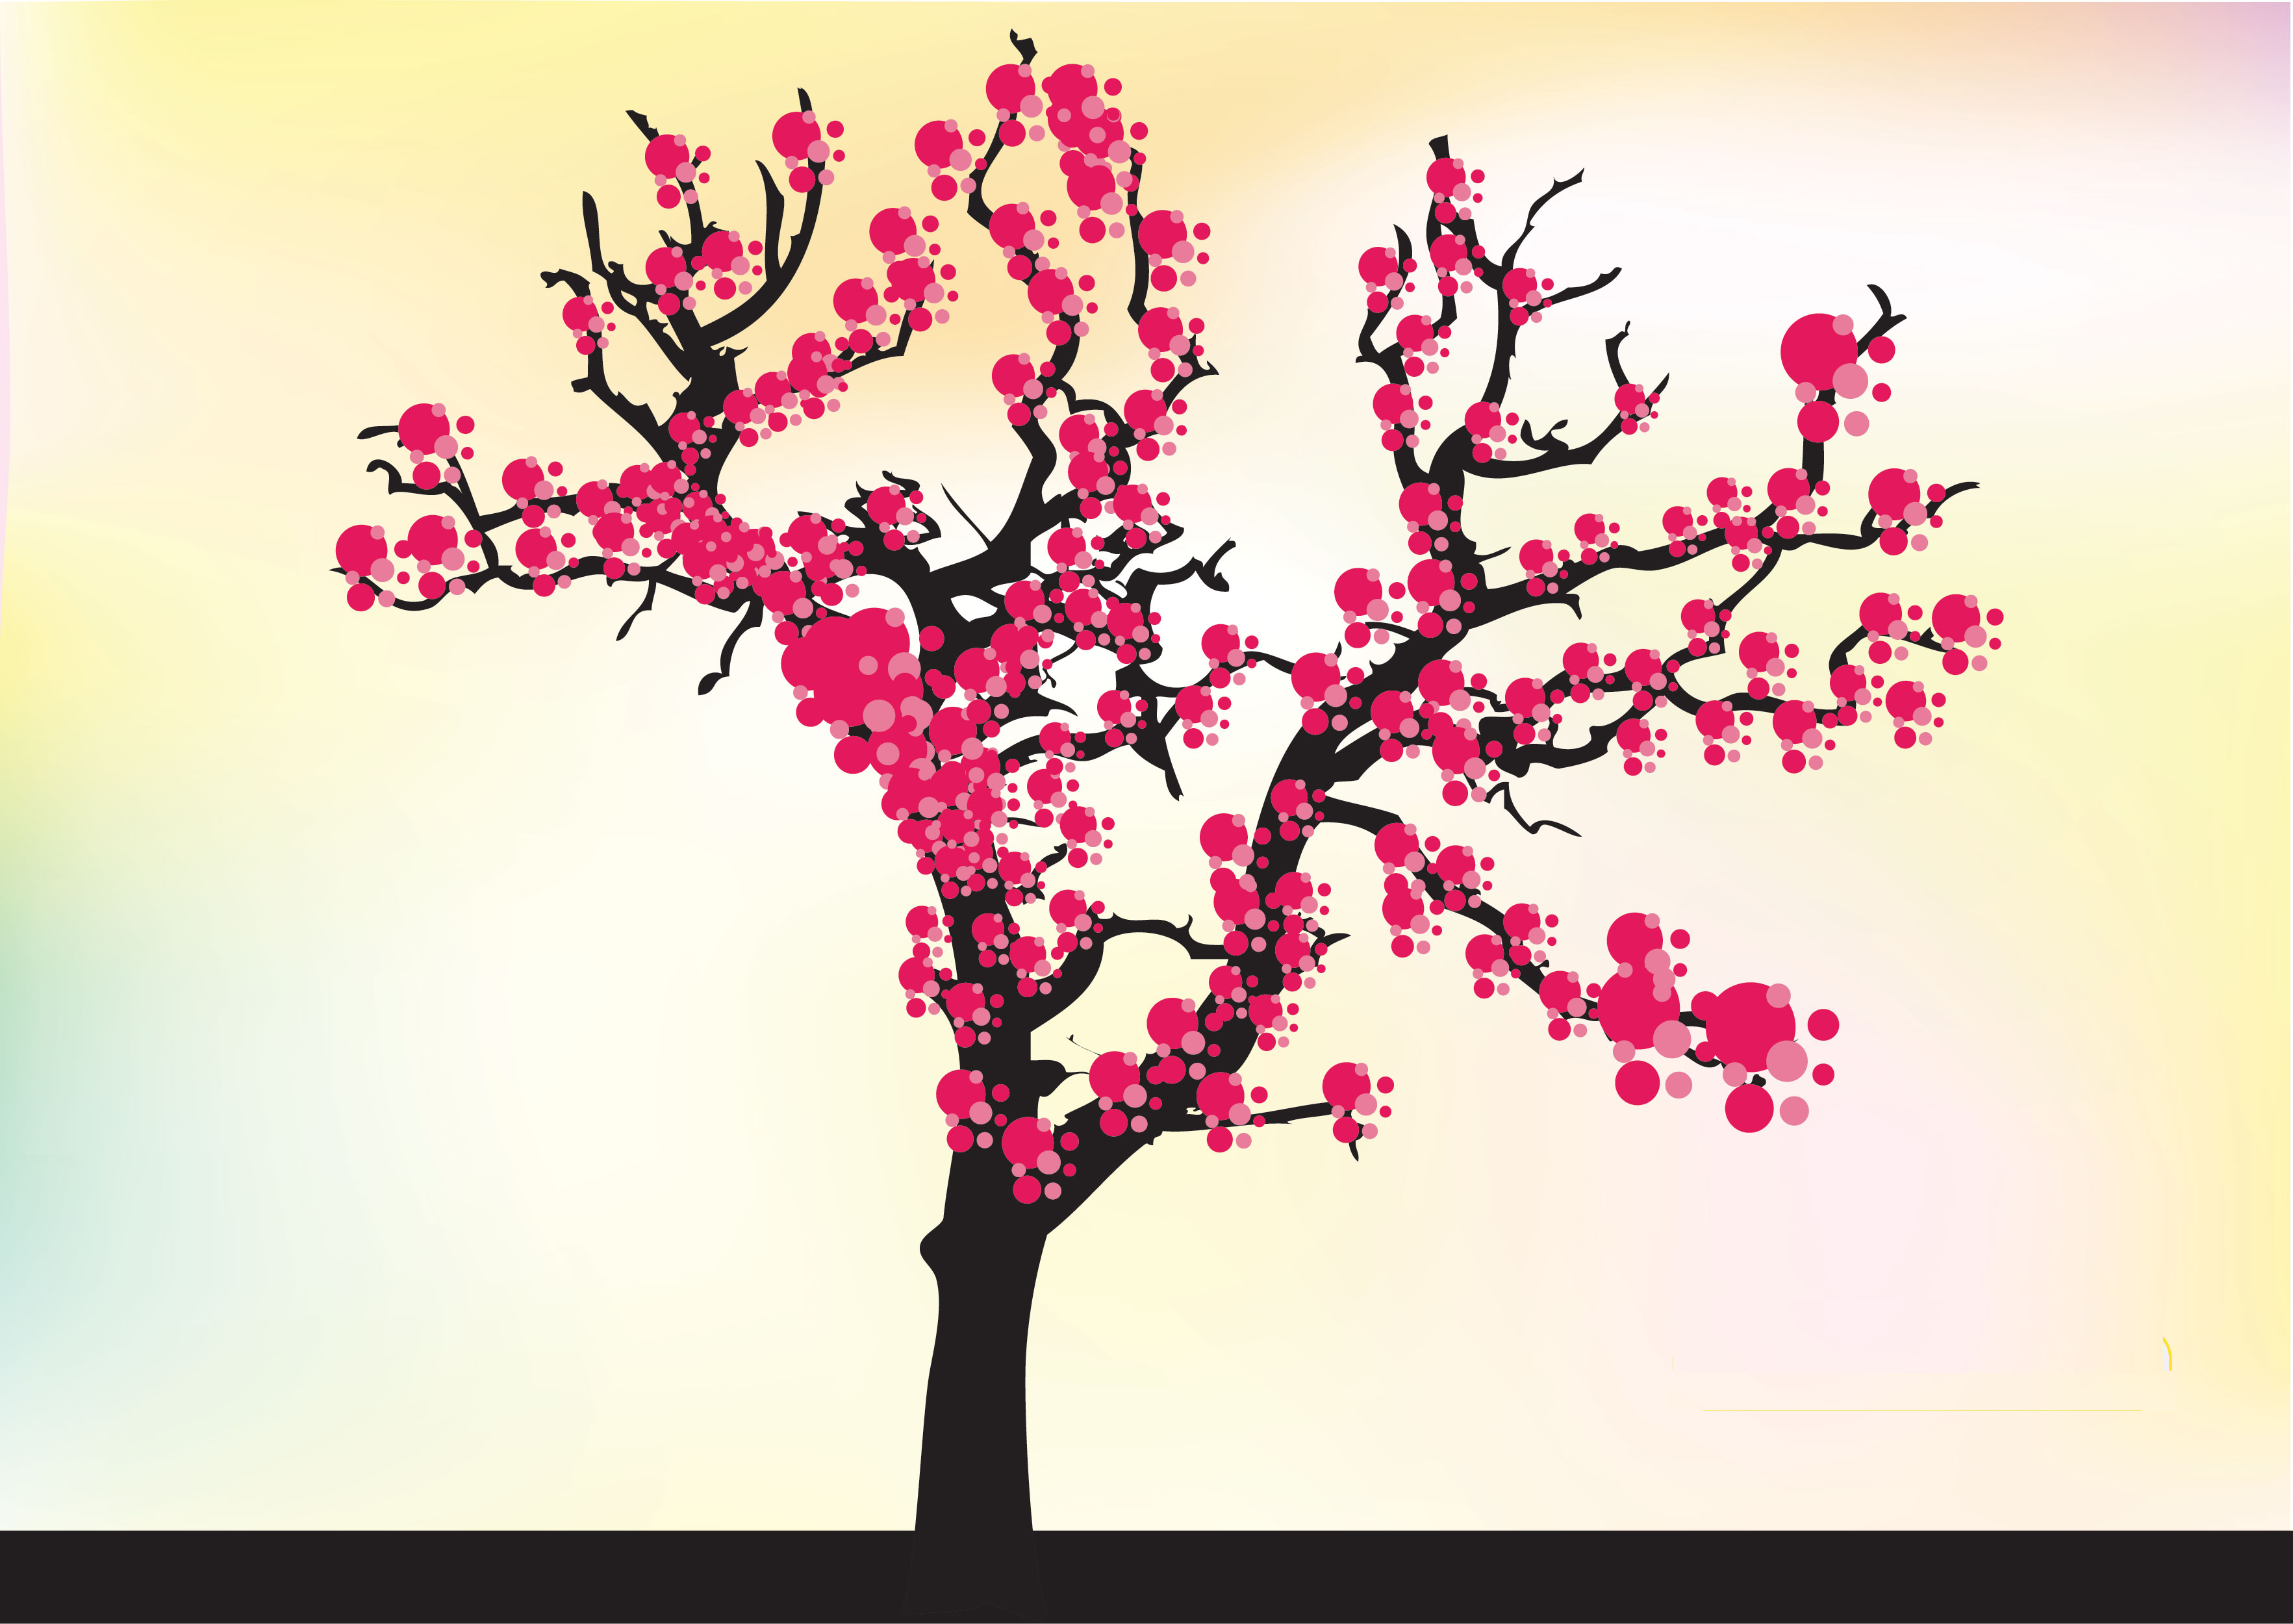 うめ 梅 のイラスト 画像no 053 壁紙 ポップなウメの木 無料のフリー素材集 百花繚乱